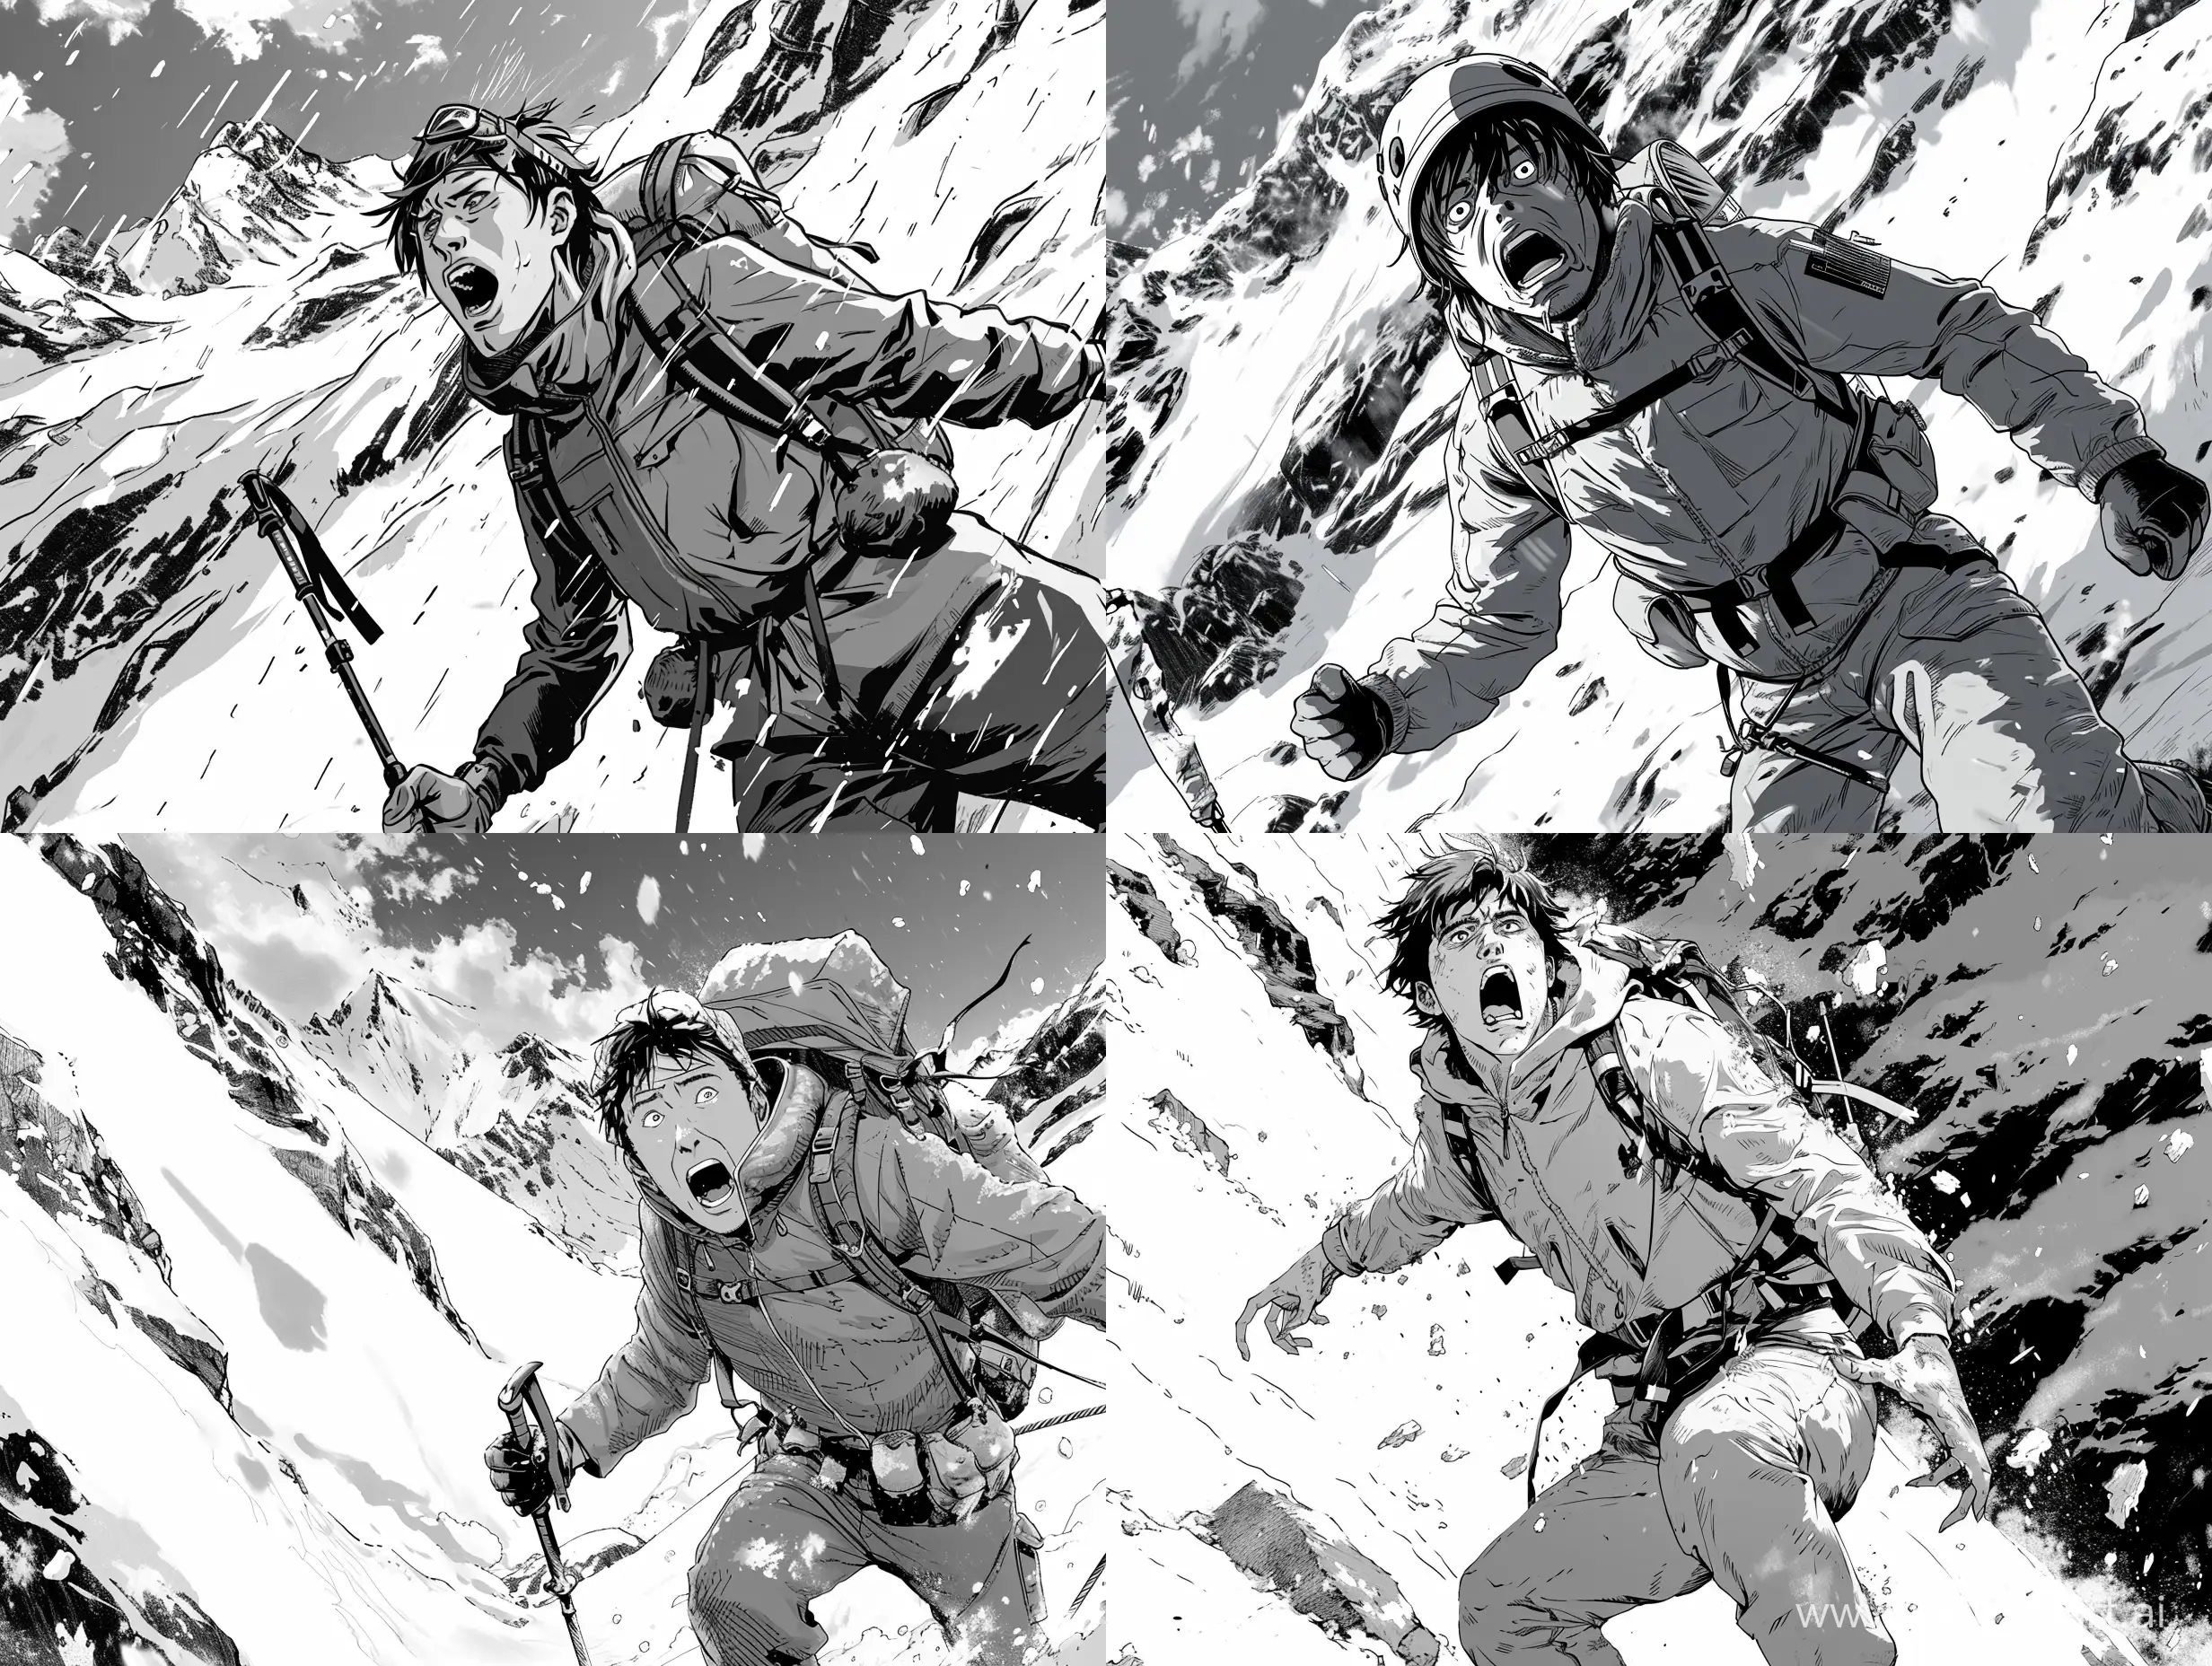 Panicstricken-Hiker-Seeks-Escape-in-Snowy-Mountain